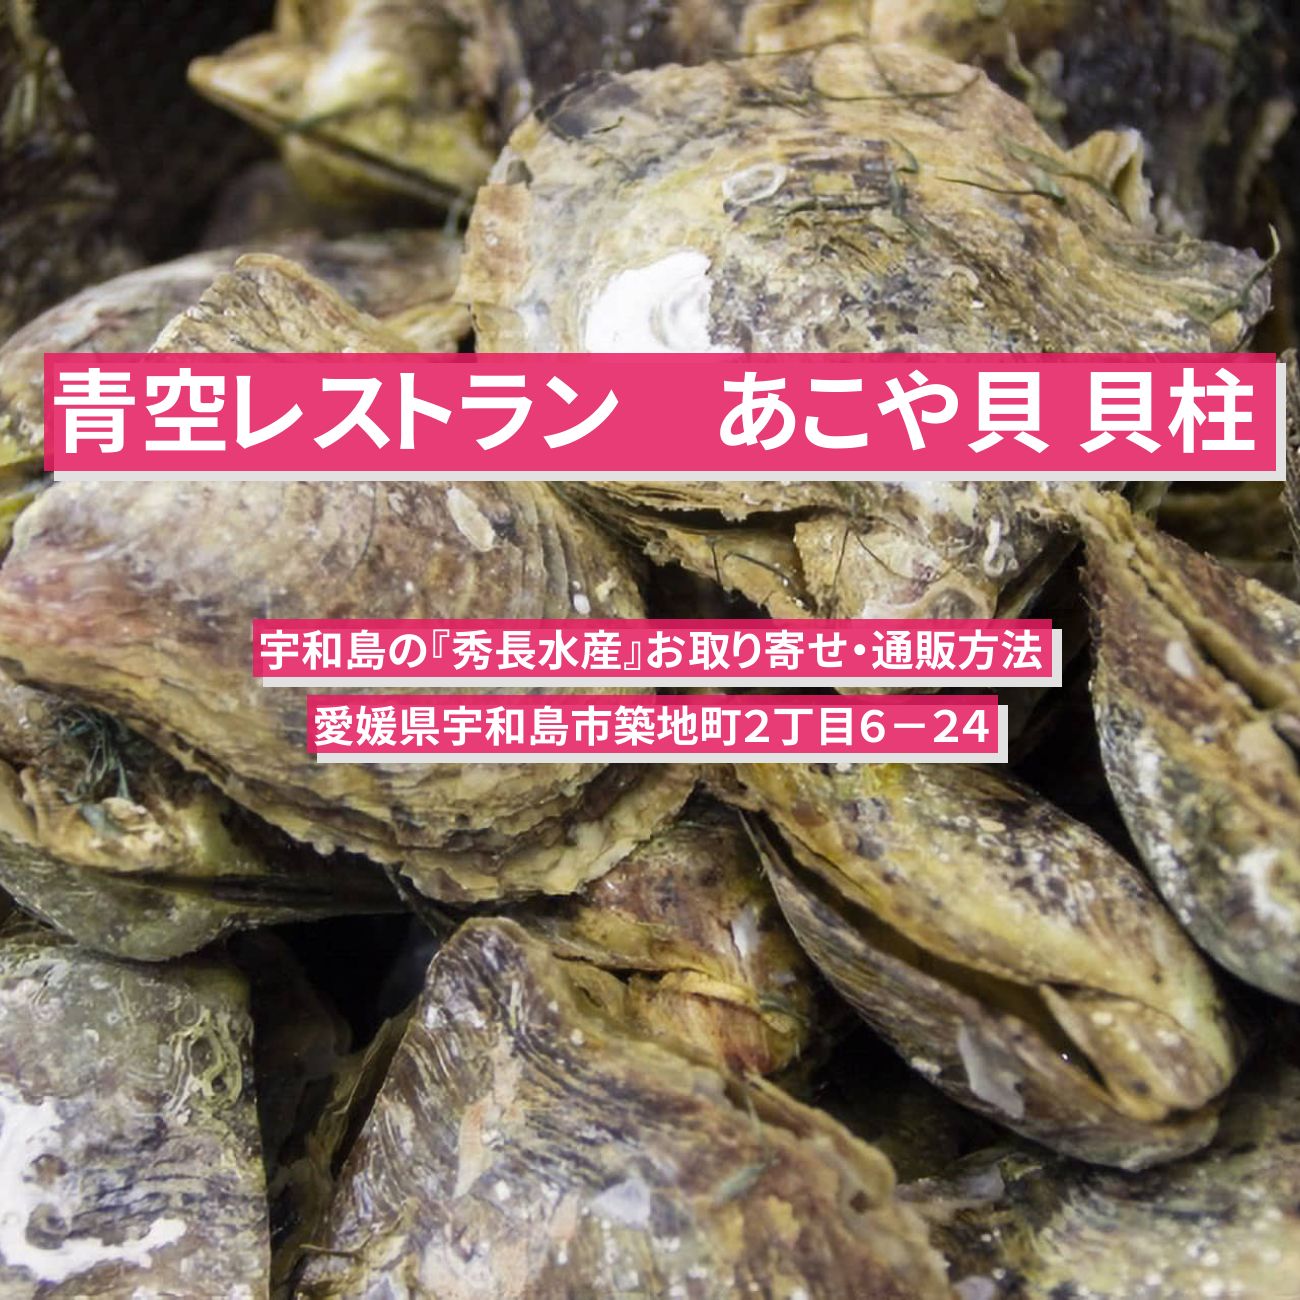 【青空レストラン】あこや貝 貝柱『秀長水産』宇和島のお取り寄せ通販・レシピ情報